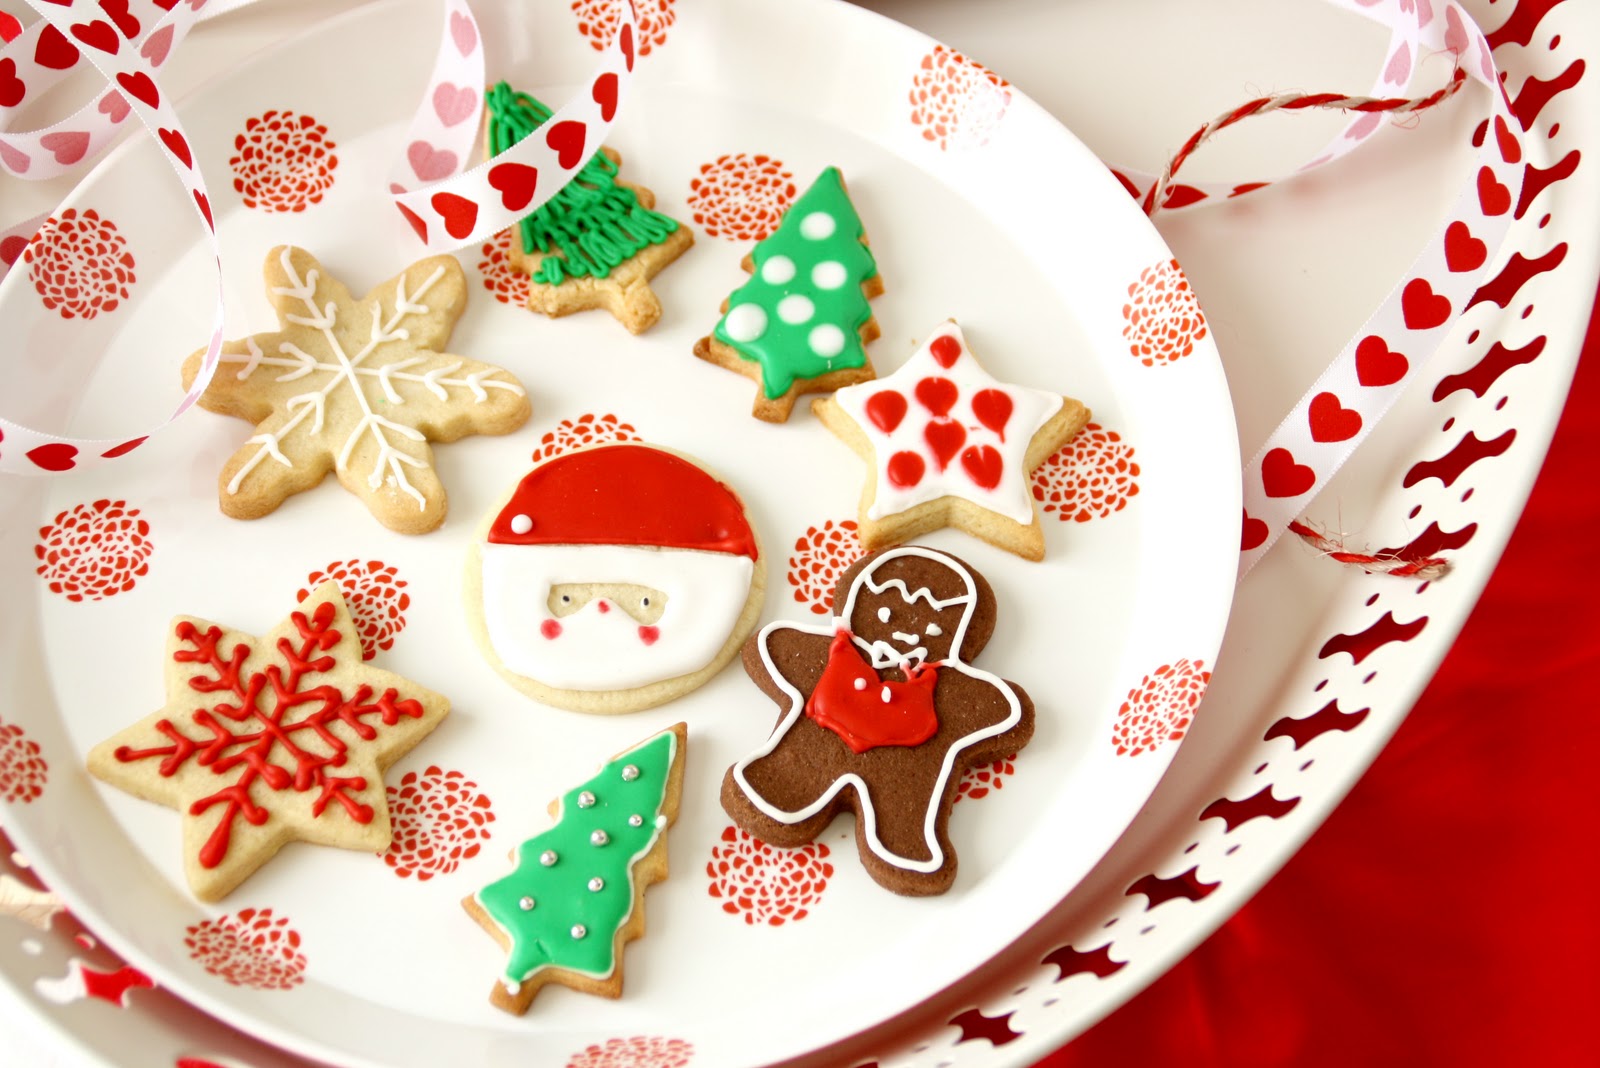 Galletas decoradas navideñas - Christmas cookies | Tengo un horno y sé